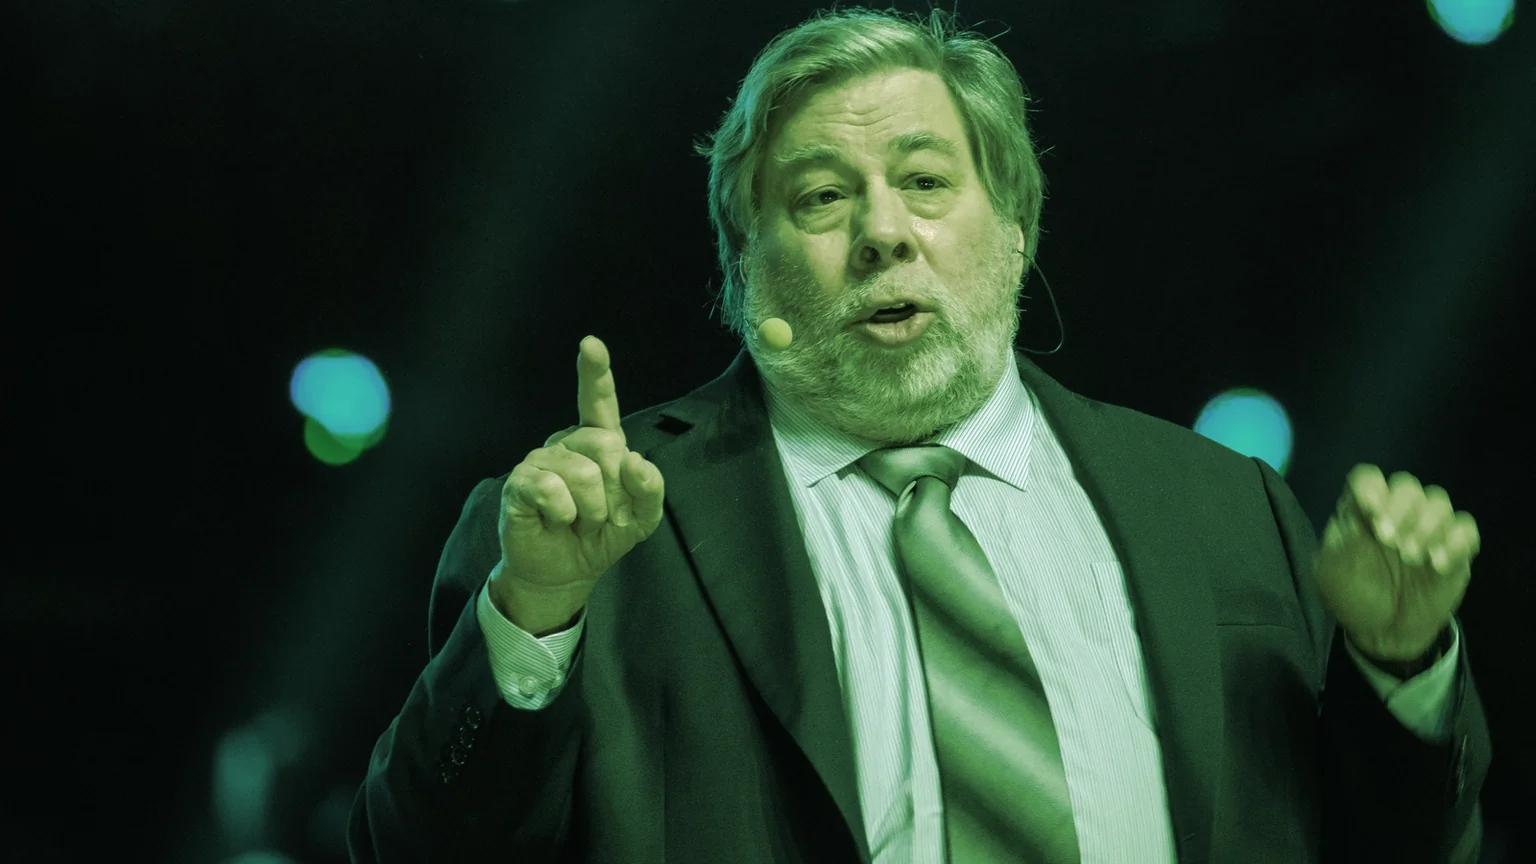 Steve Wozniak co-founded Apple. Image: Shutterstock